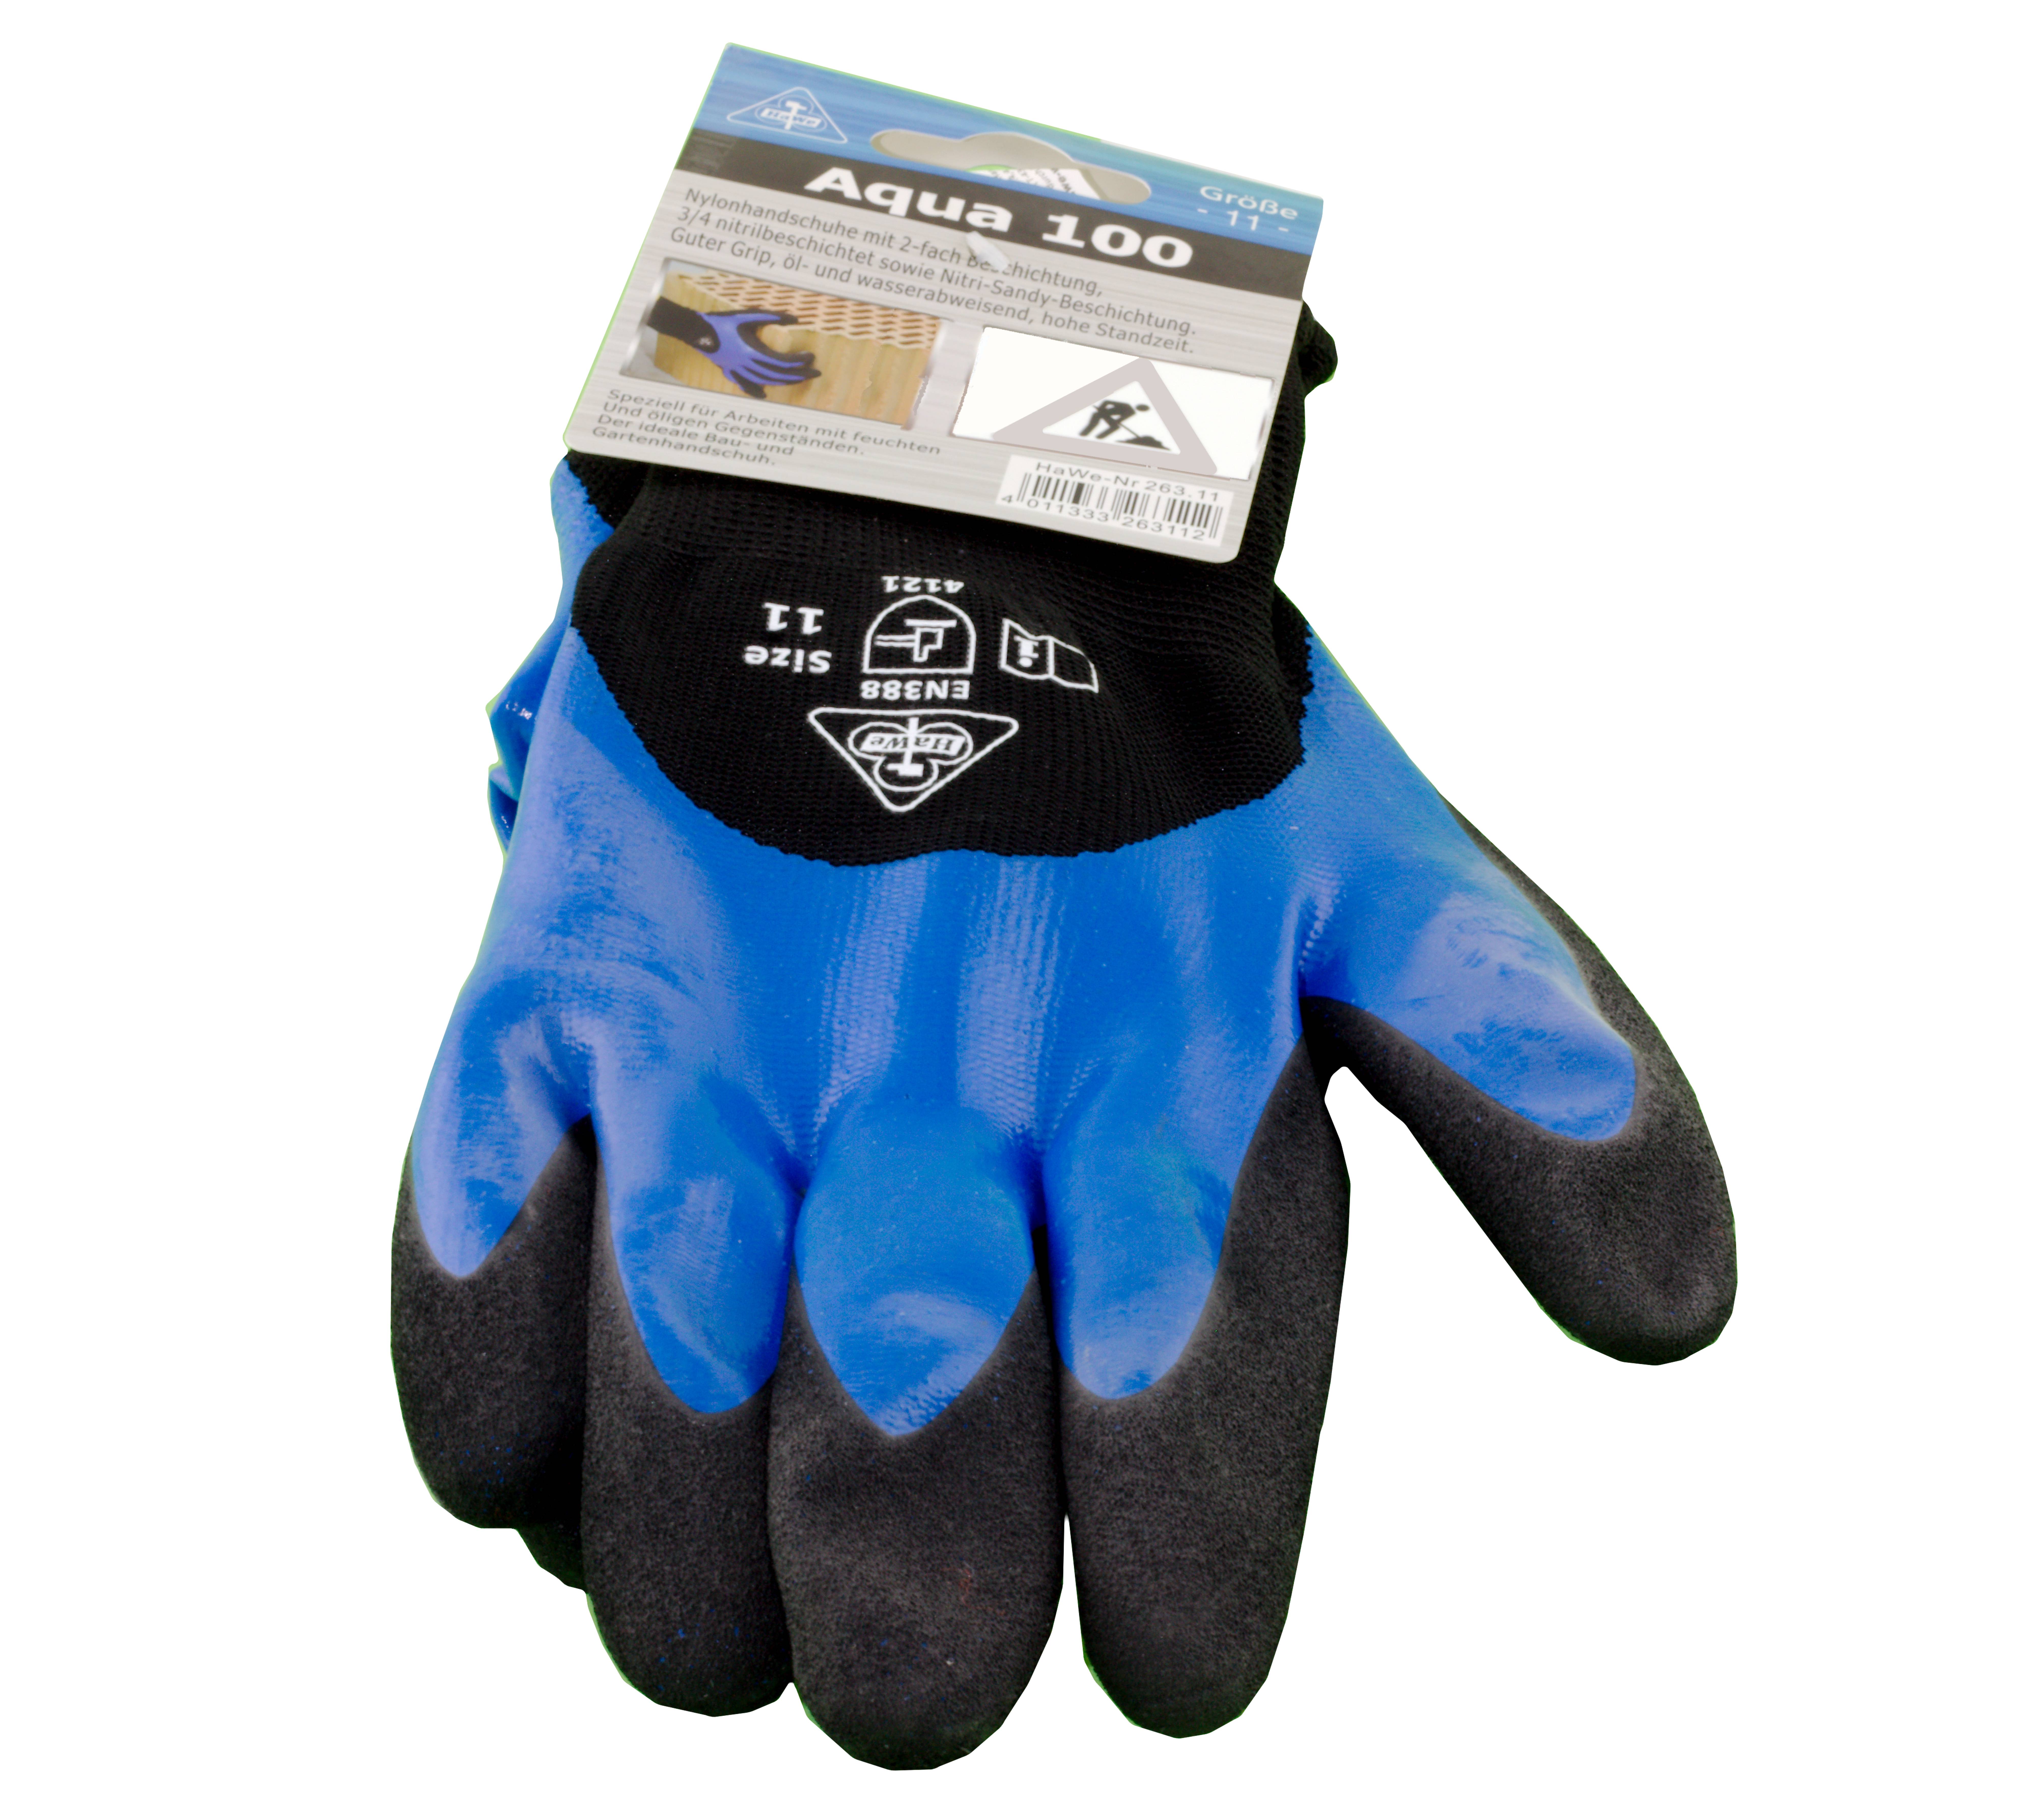 Gartenhandschuhe Arbeits-Handschuhe Hexaflex 